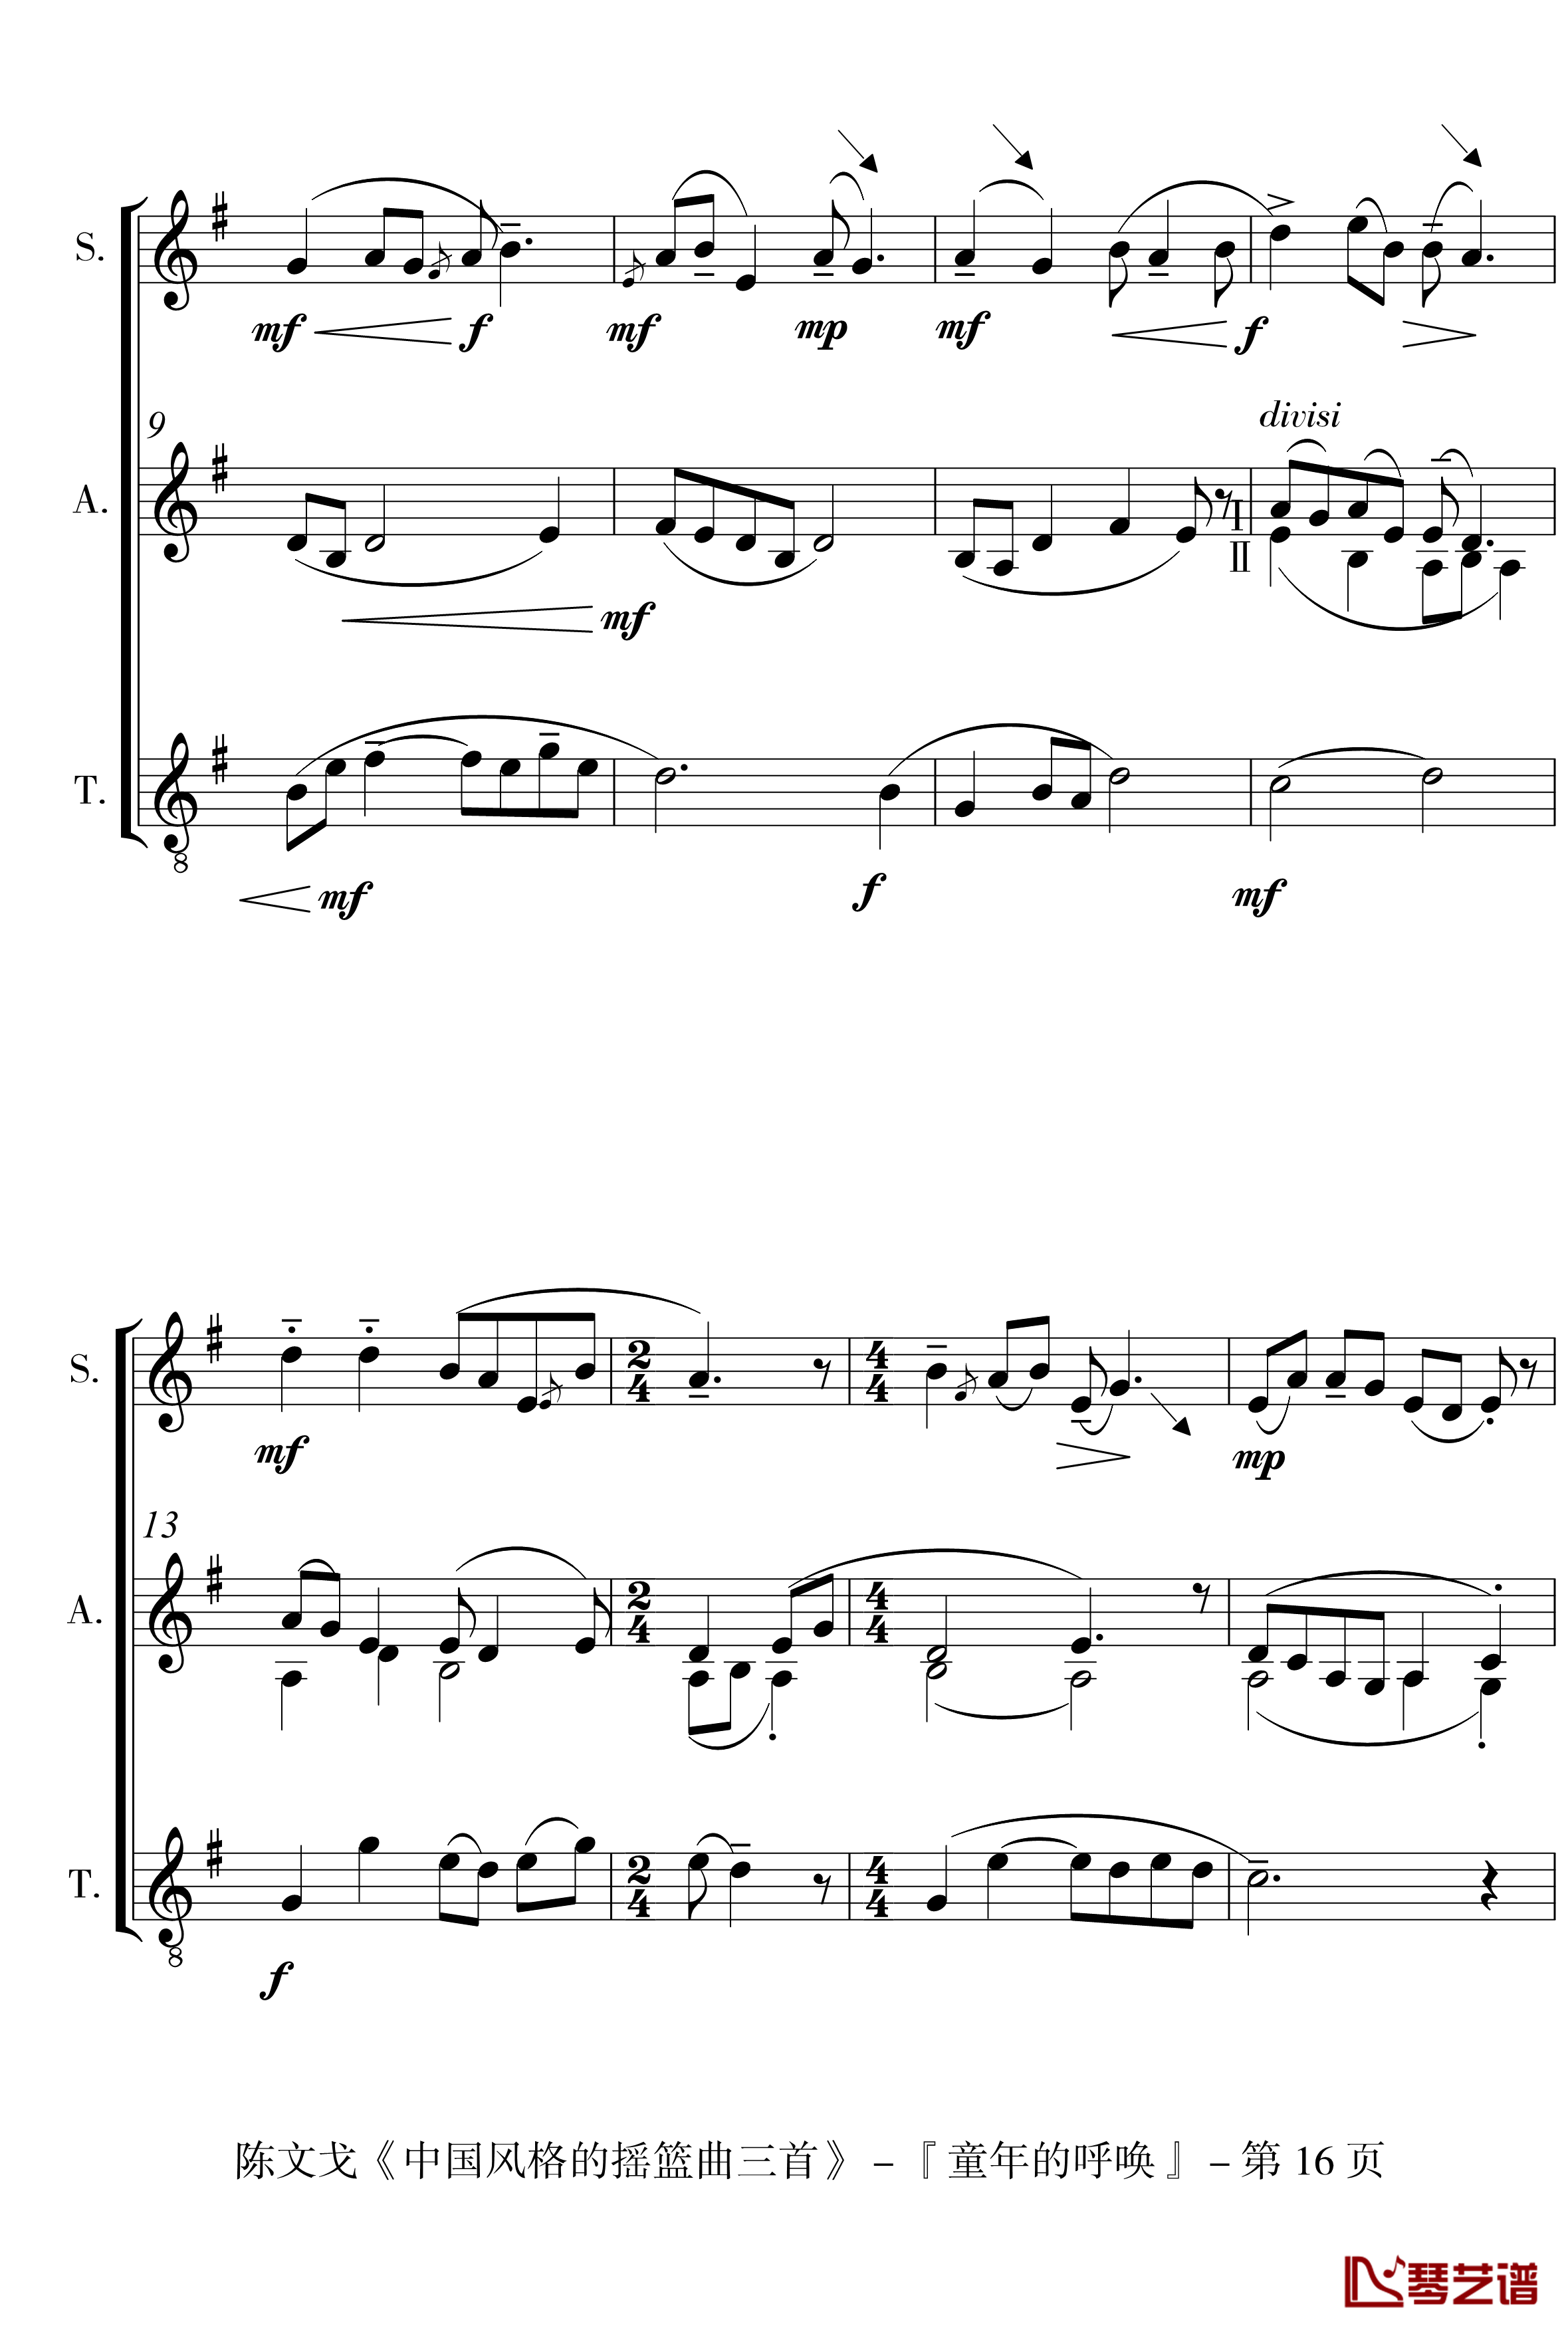 中国风格的合唱摇篮曲三首钢琴谱-I, II, III-陈文戈16